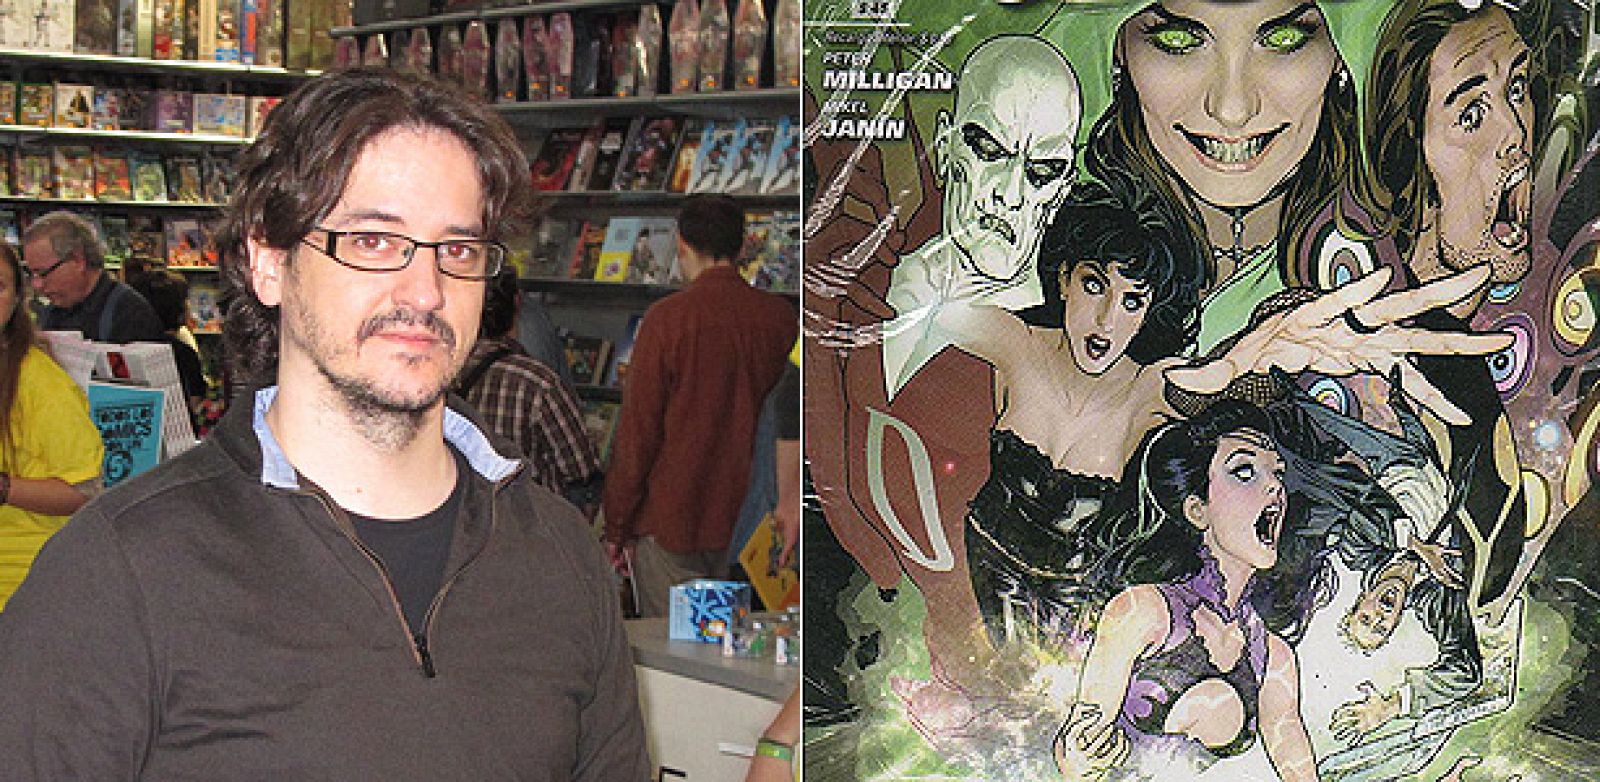 Mikel Janín en el Salón del cómic y fragmento de la portada de 'La Liga de la Justicia Oscura'